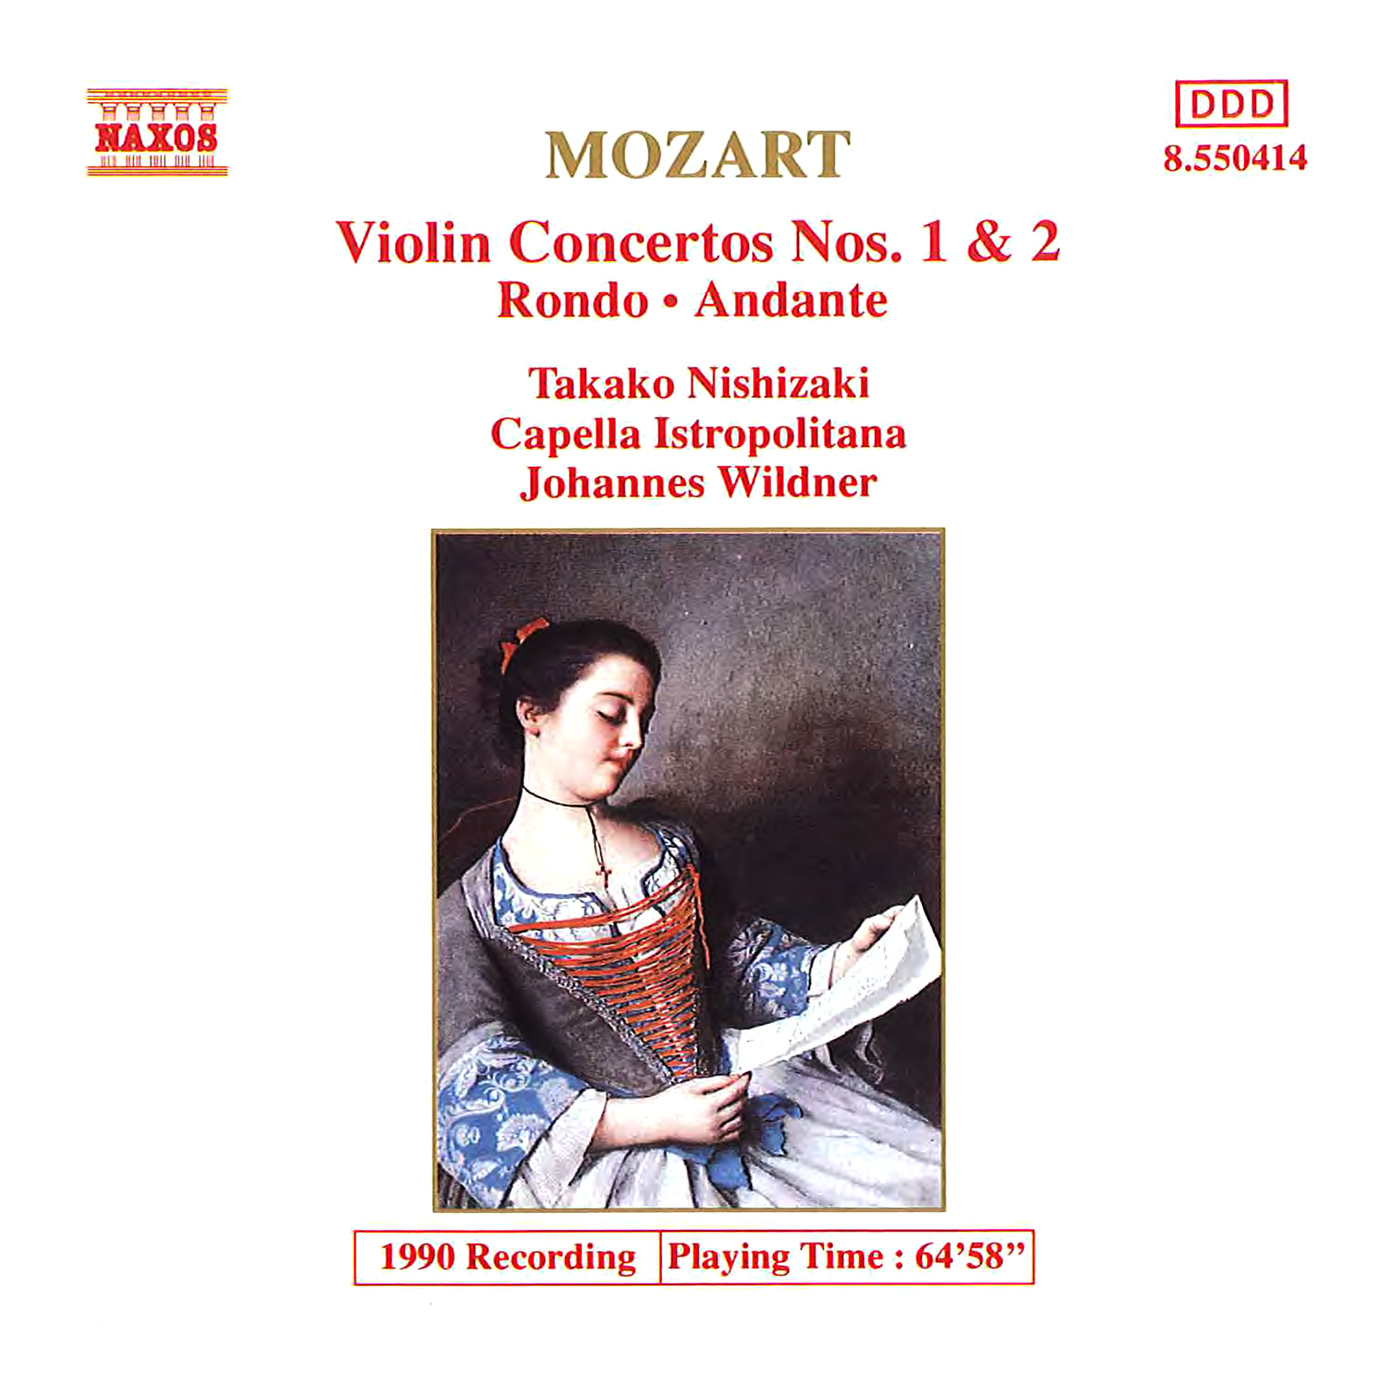 Violin Concerto No. 1 in B-Flat Major, K. 207:II. Adagio